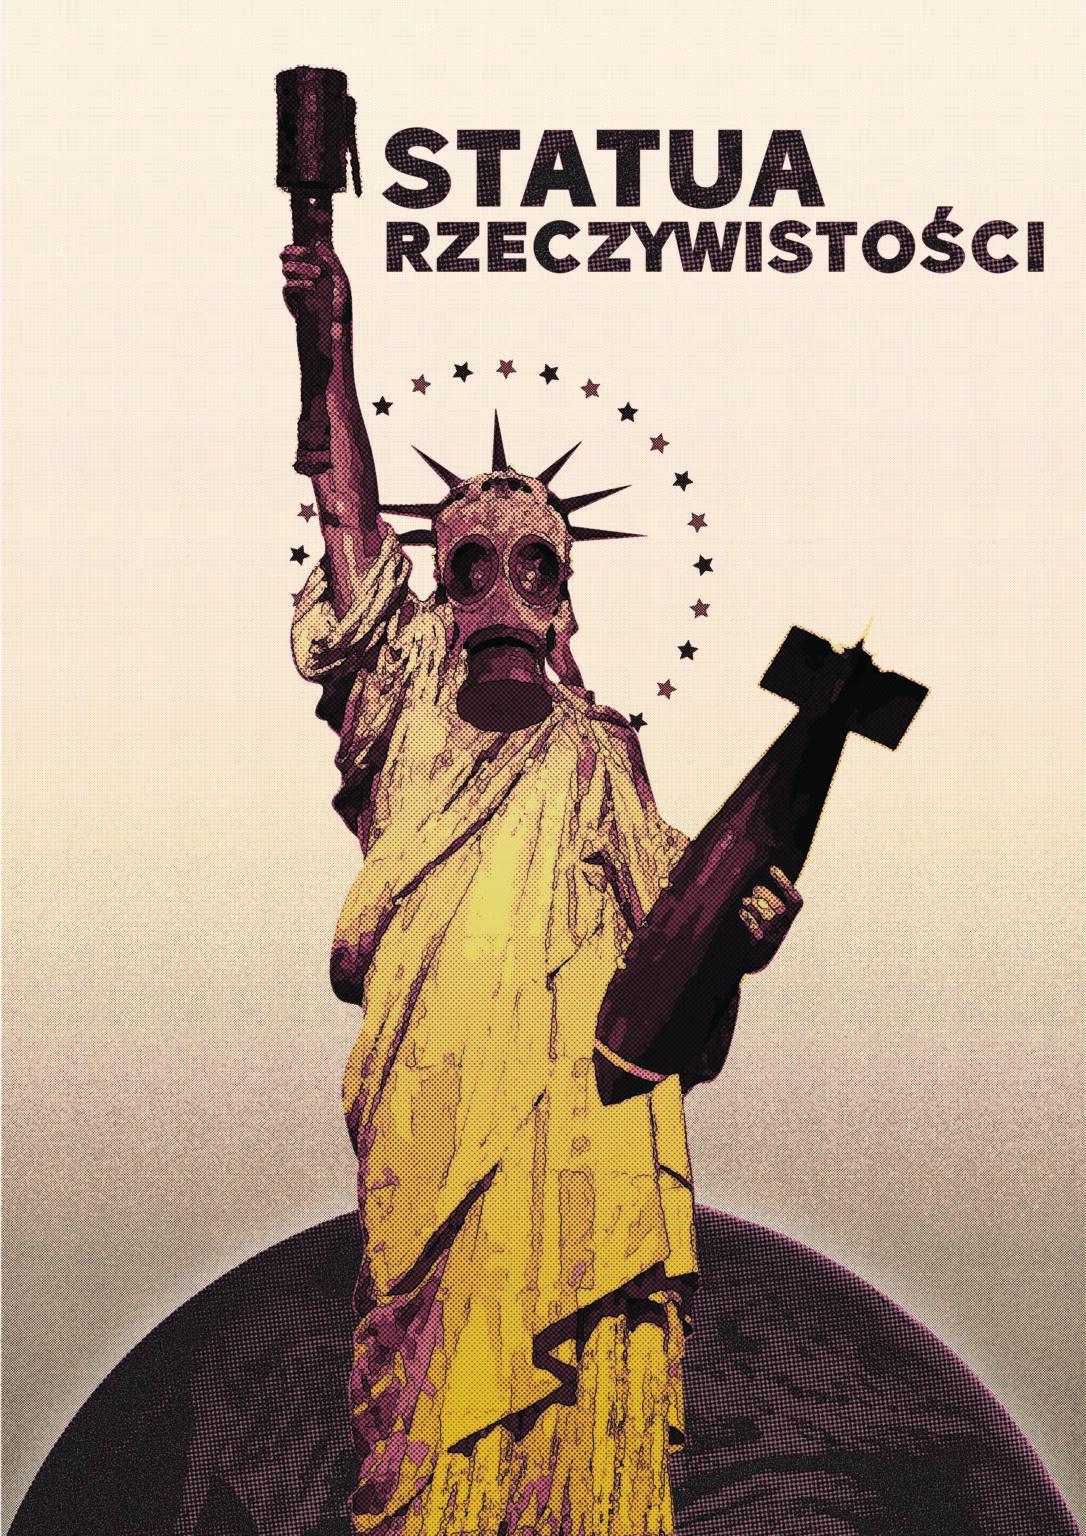 Plakat z napisem: Statua rzeczywistości. Na plakacie widać statuę wolności z maską gazową, bombą w ręce oraz zgaszoną, zardzewiałą pochodnią.